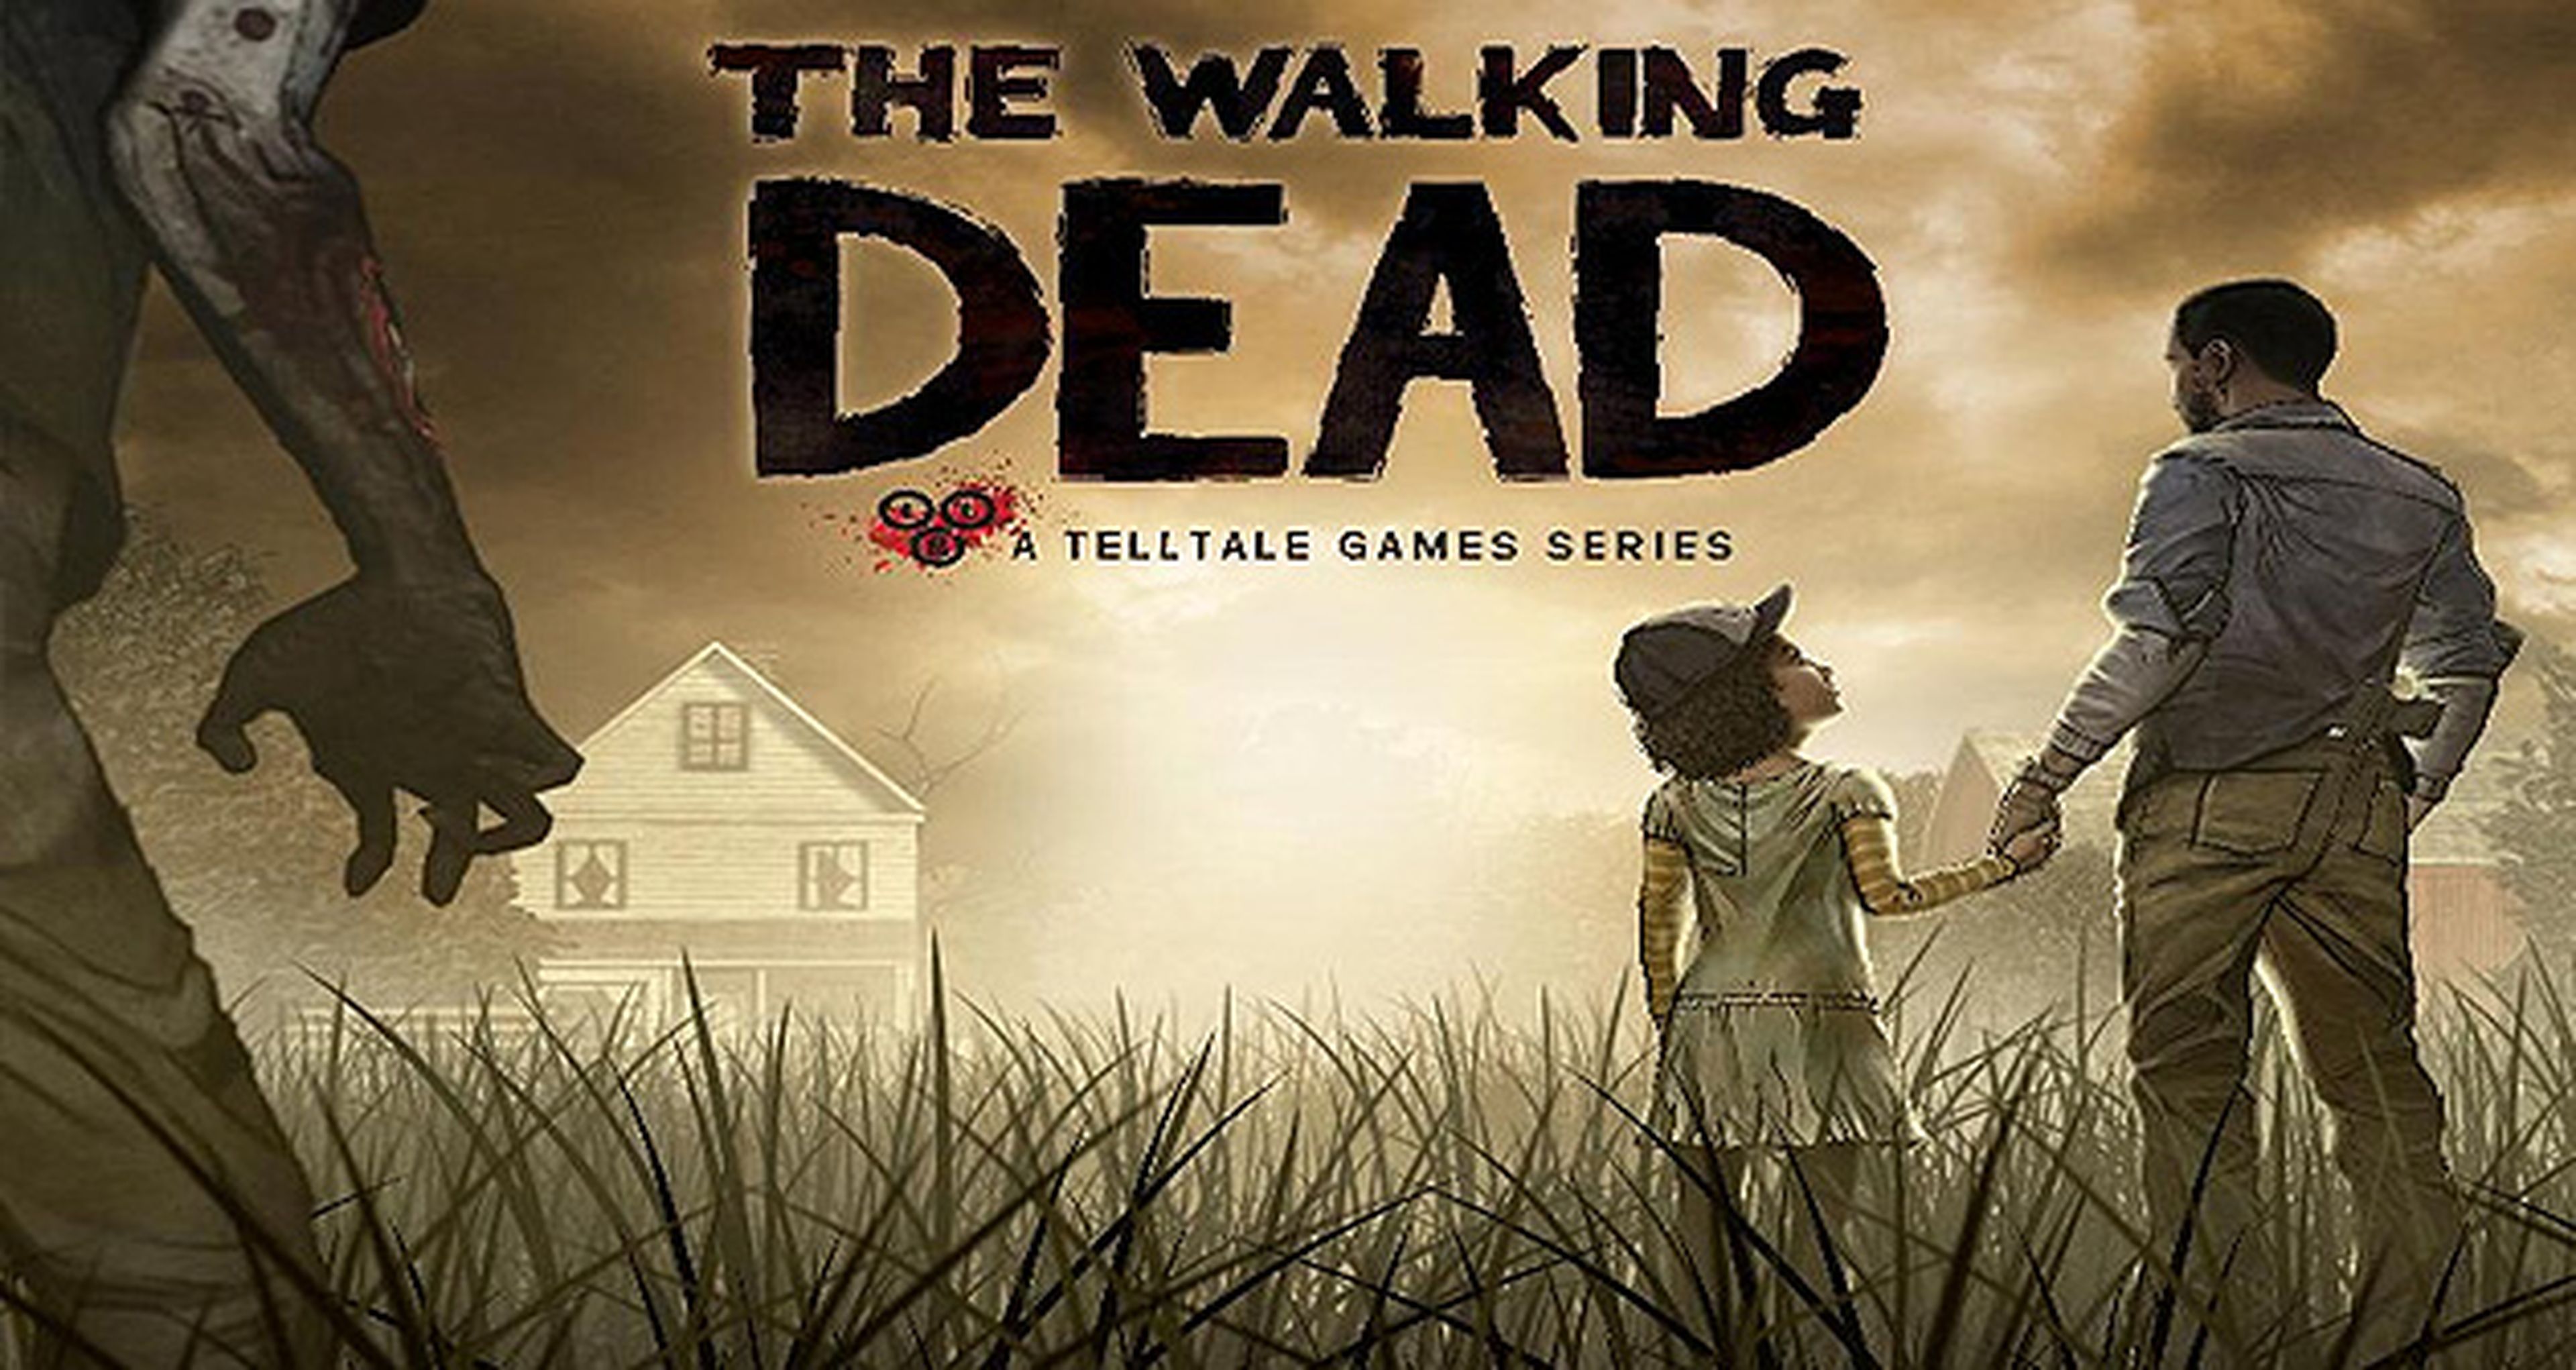 La ed. física de The Walking Dead el 10 de mayo